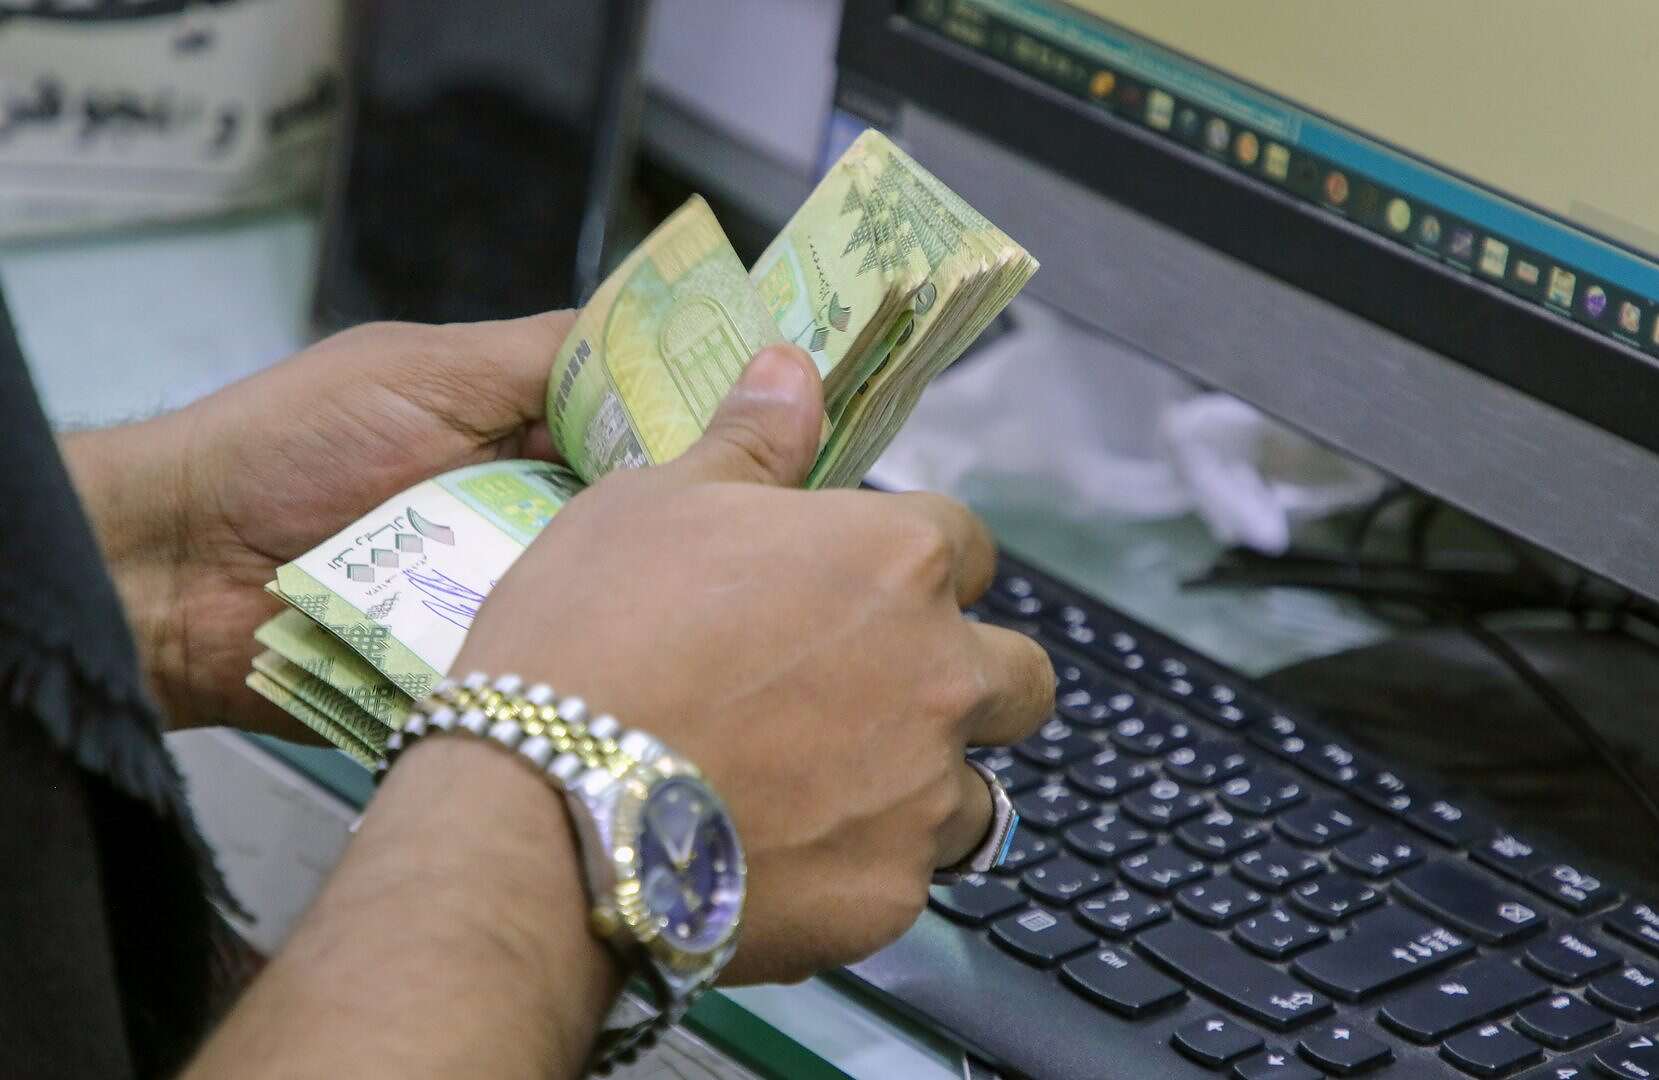 الريال اليمني يسجل قفزة تحسن هائلة أمام العملات الأجنبية اليوم الخميس.. السعر الآن